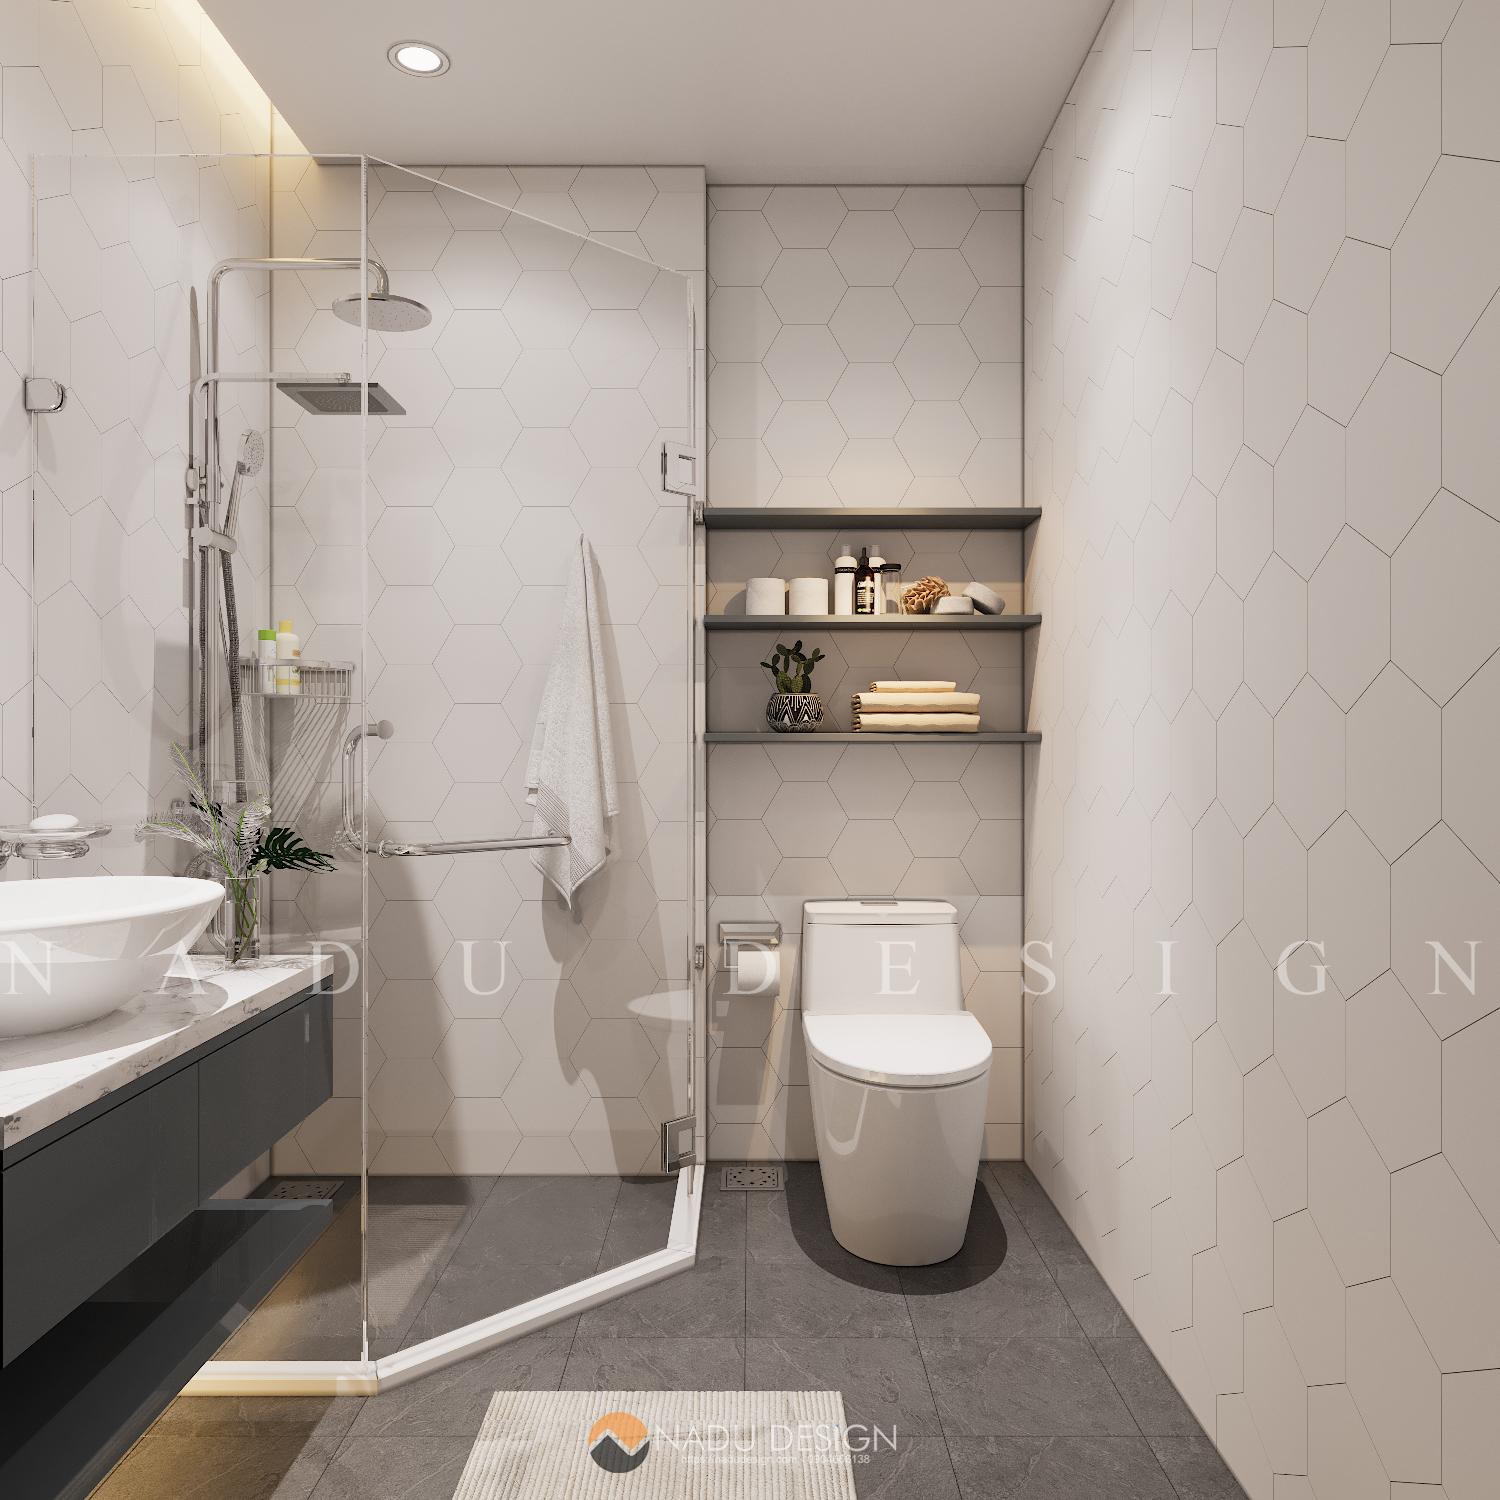 Thiết kế phòng tắm 4m2 sang trọng là một trong những xu hướng thiết kế phòng tắm đang được ưa chuộng hiện nay. Với các vật liệu hoa văn và kim loại, bạn có thể tạo ra một không gian phòng tắm tinh tế và sang trọng. Hãy xem những hình ảnh phòng tắm 4m2 sang trọng để có được sự cảm hứng cho căn phòng tắm của bạn.